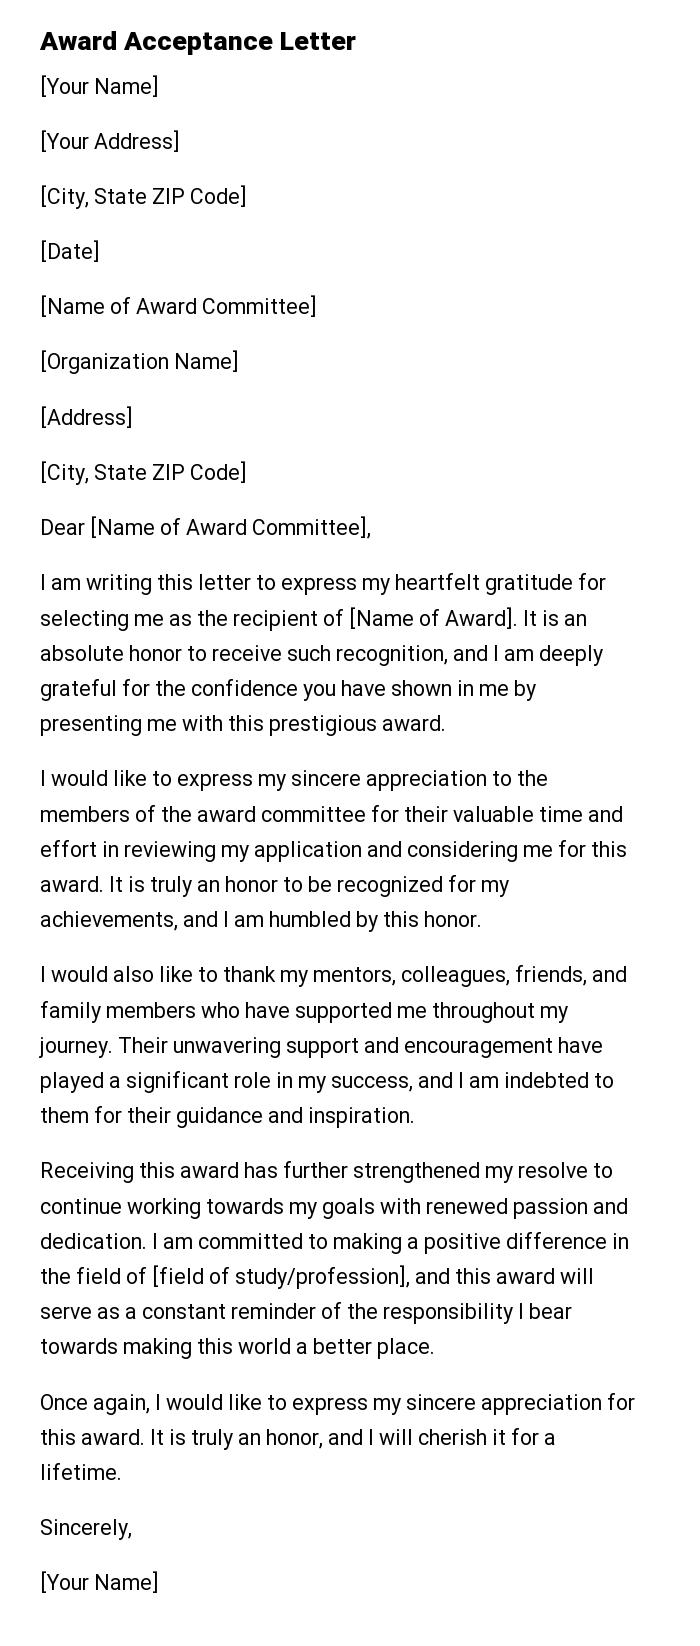 Award Acceptance Letter